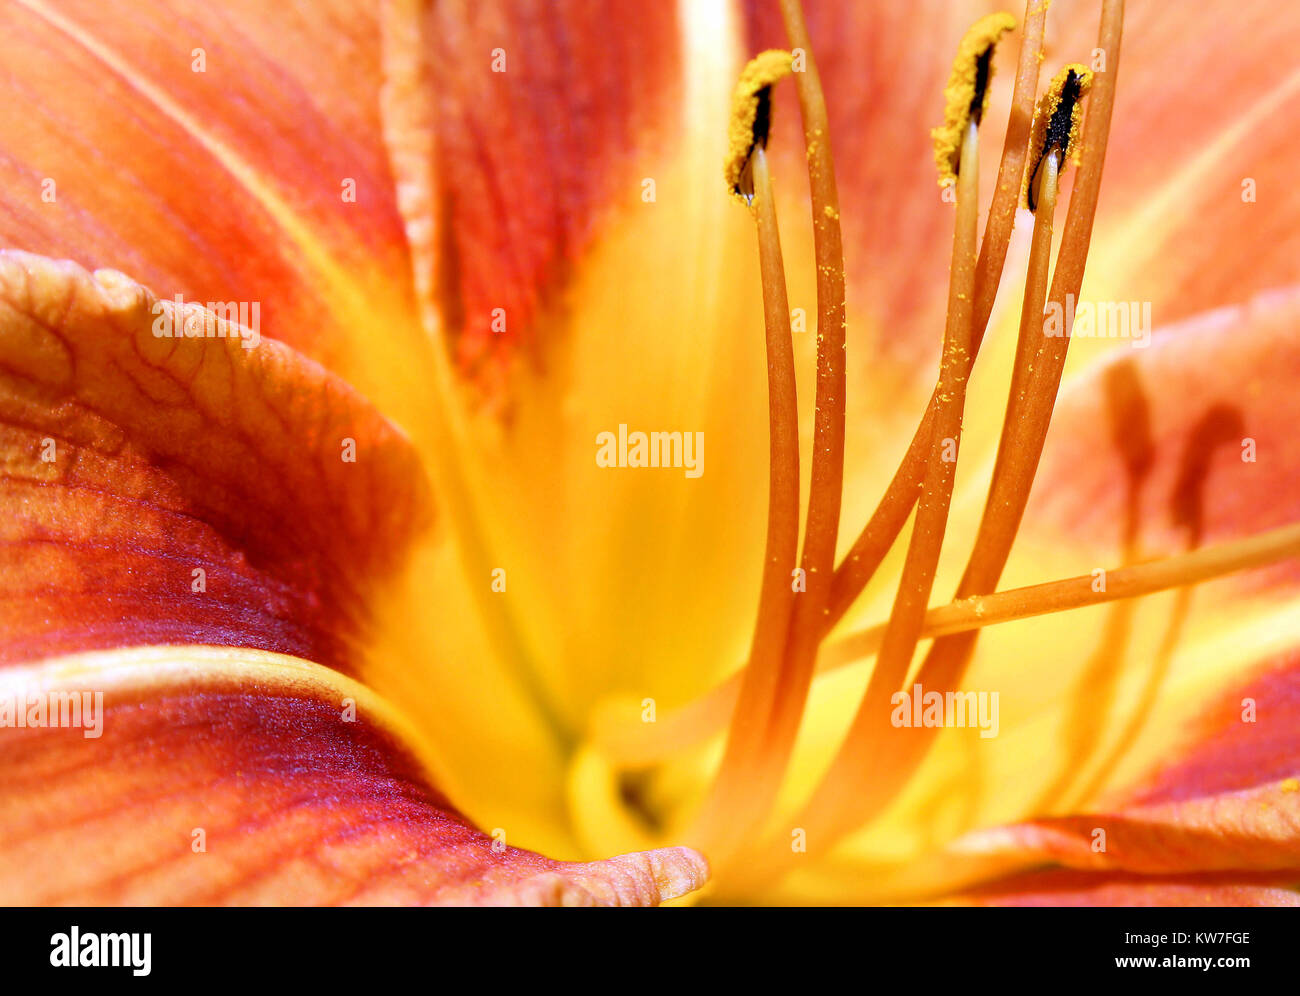 Nahaufnahme der Tag Lily Flower. Goldene Pollen können auf Kolben und staubblatt gesehen werden. Stockfoto